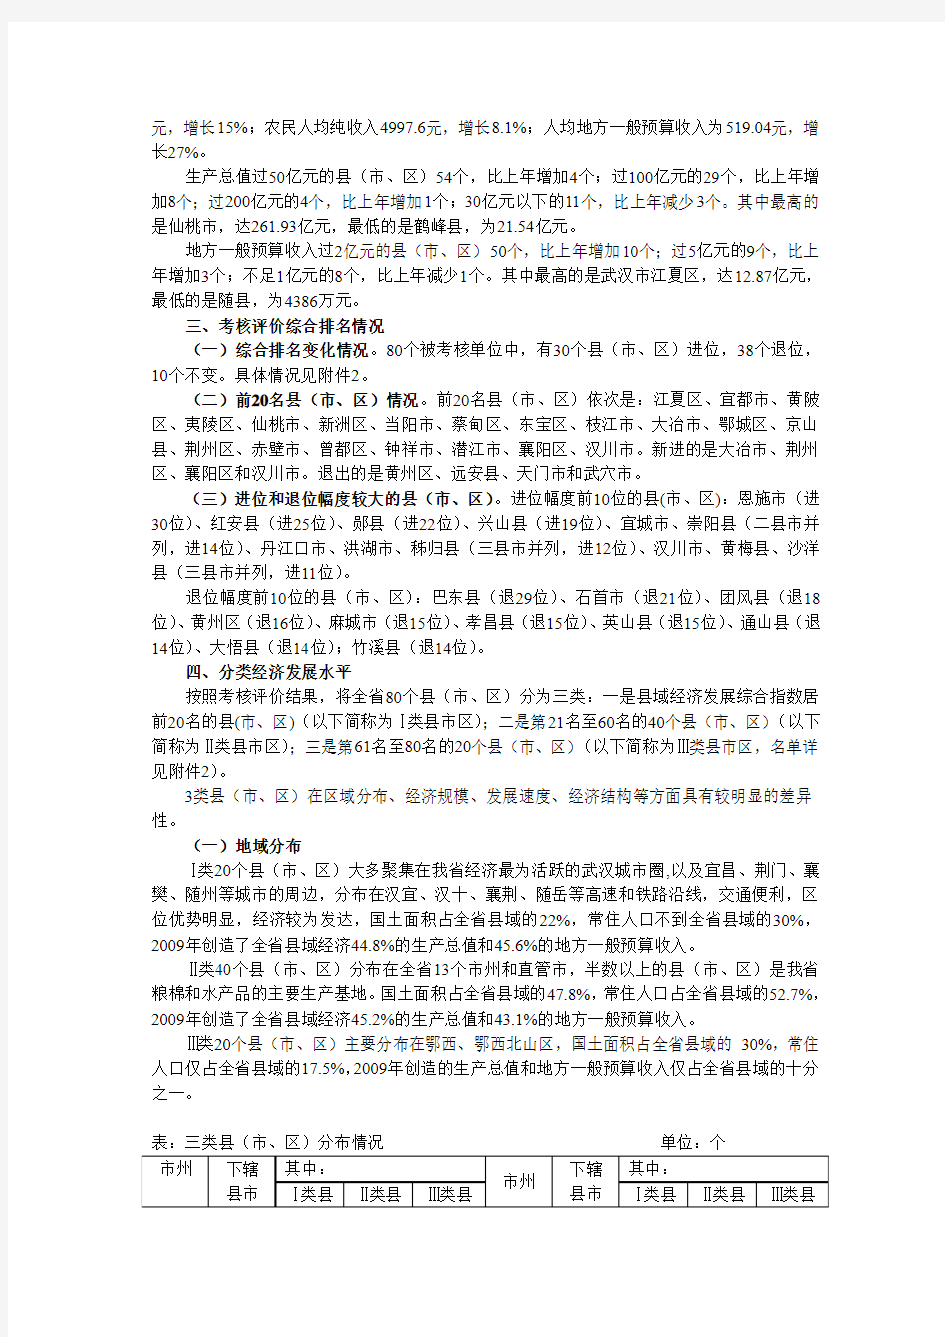 2009年湖北省县域经济发展考核评价报告